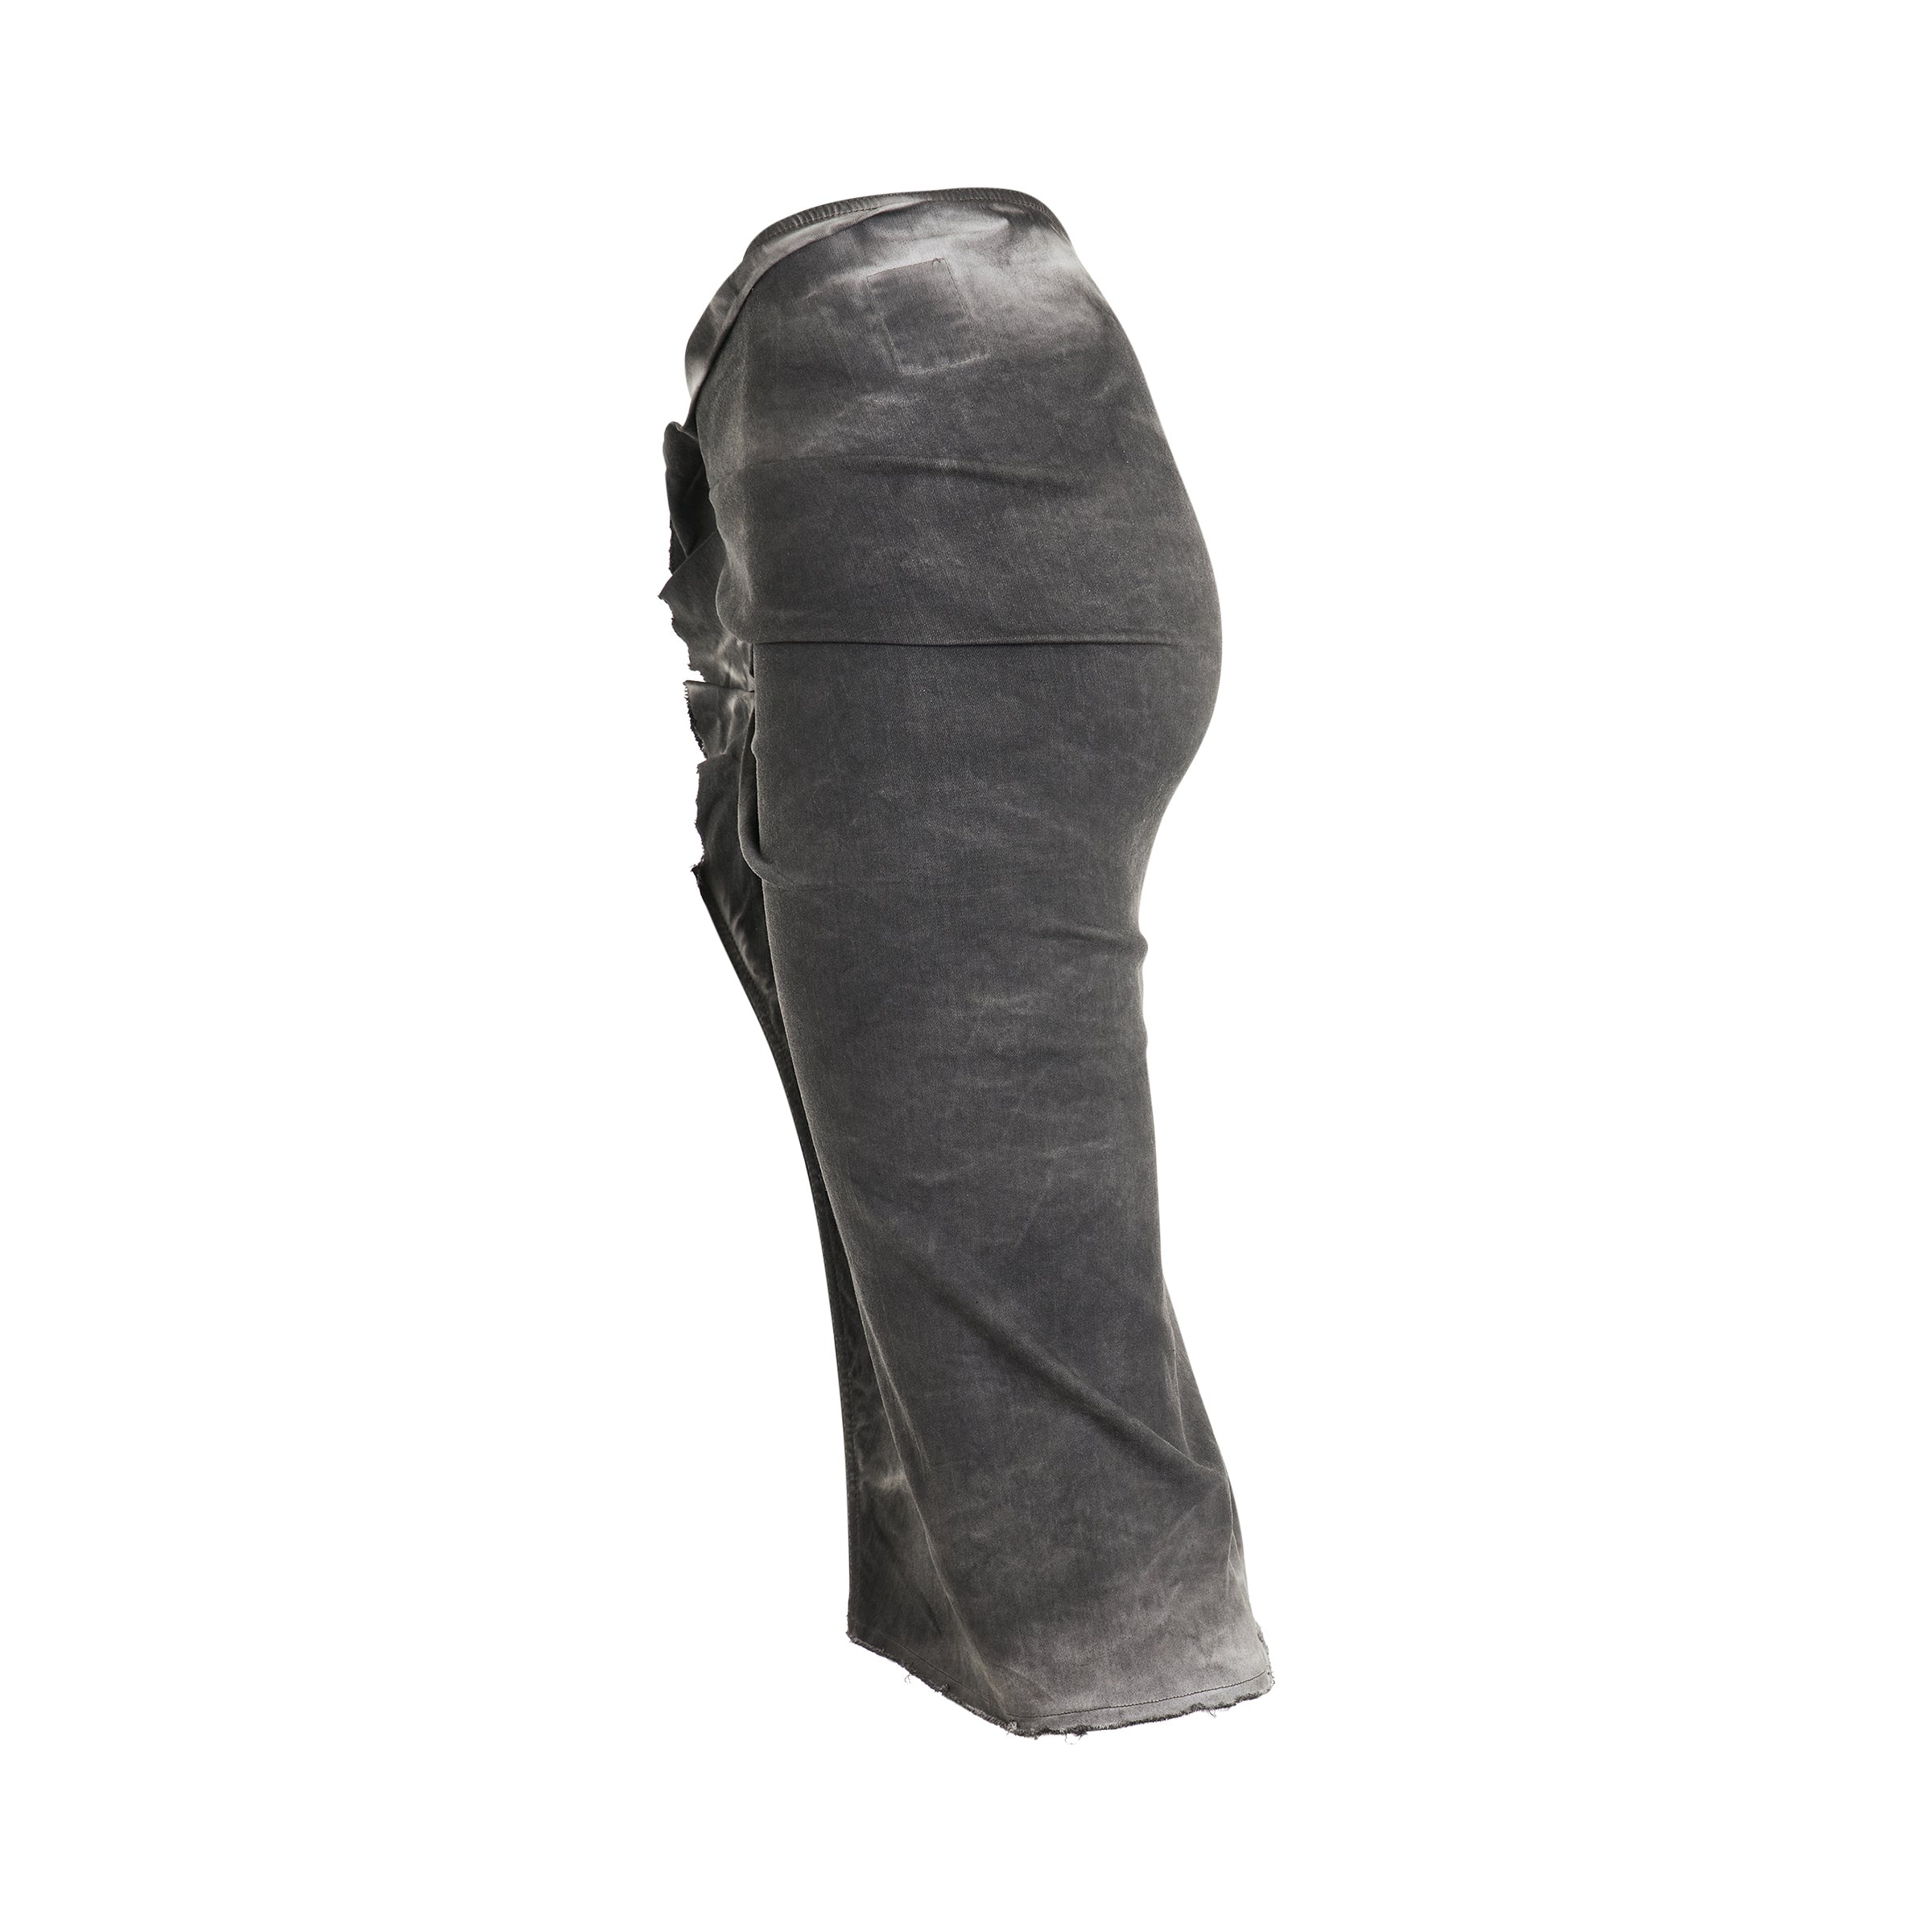 EDFU Knee Skirt in Dark Dust - 3